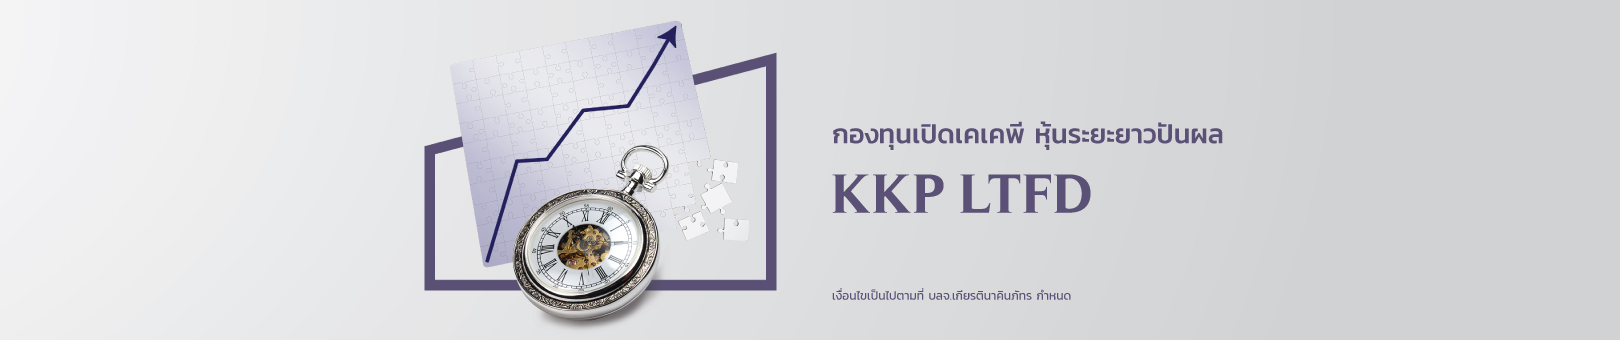 KKP-LTFD-1620x340